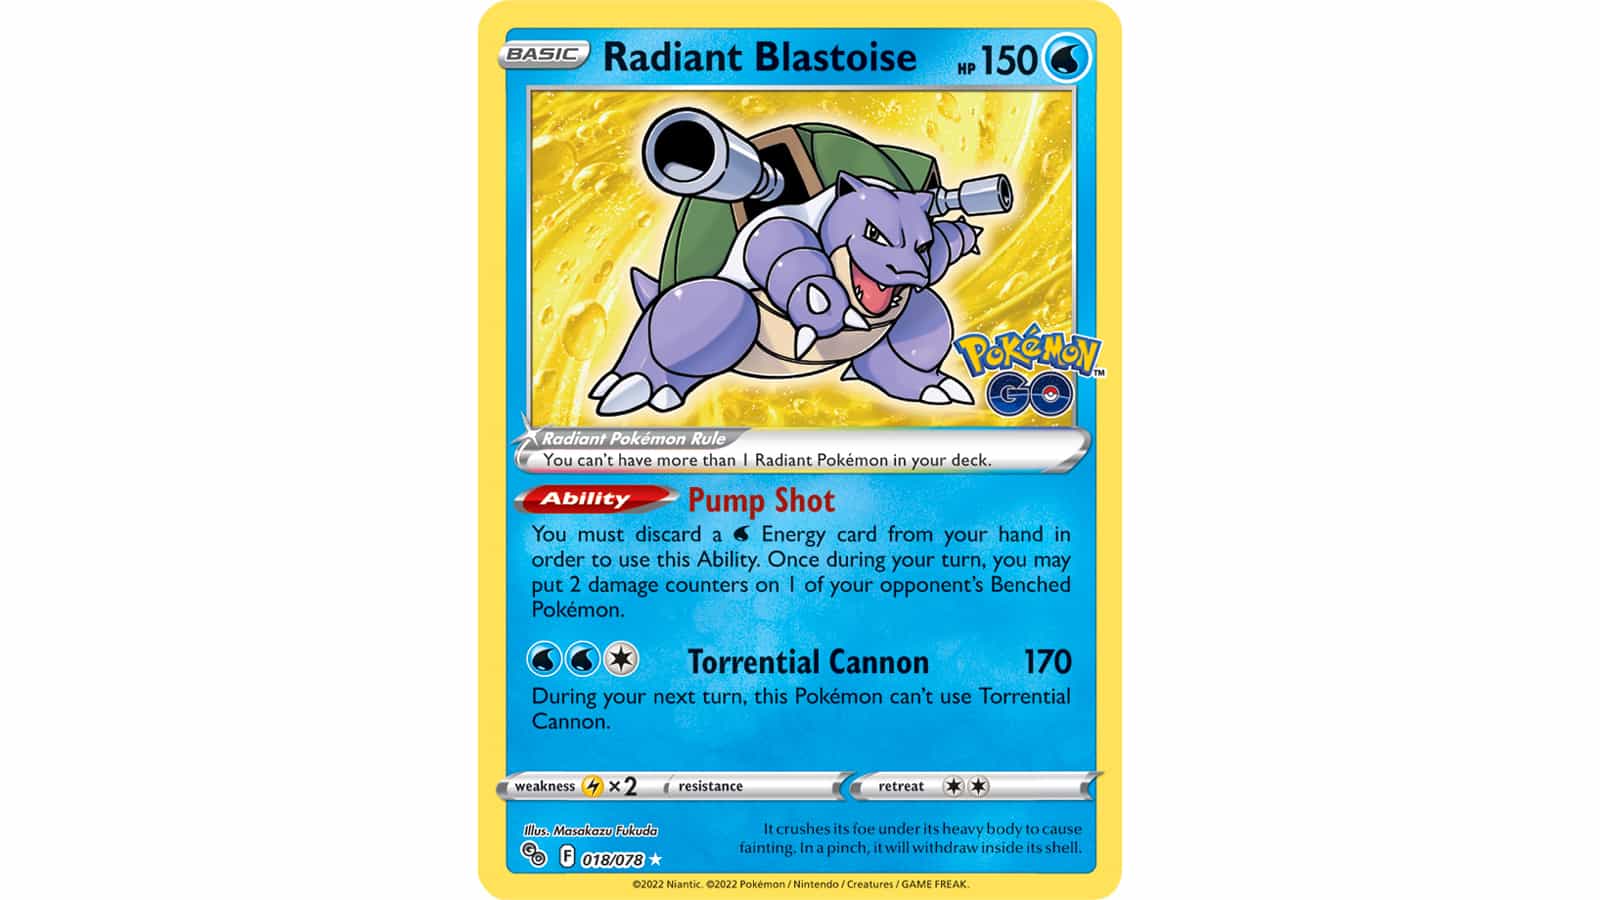 Radiant Blastoise in the Pokemon Go TCG set